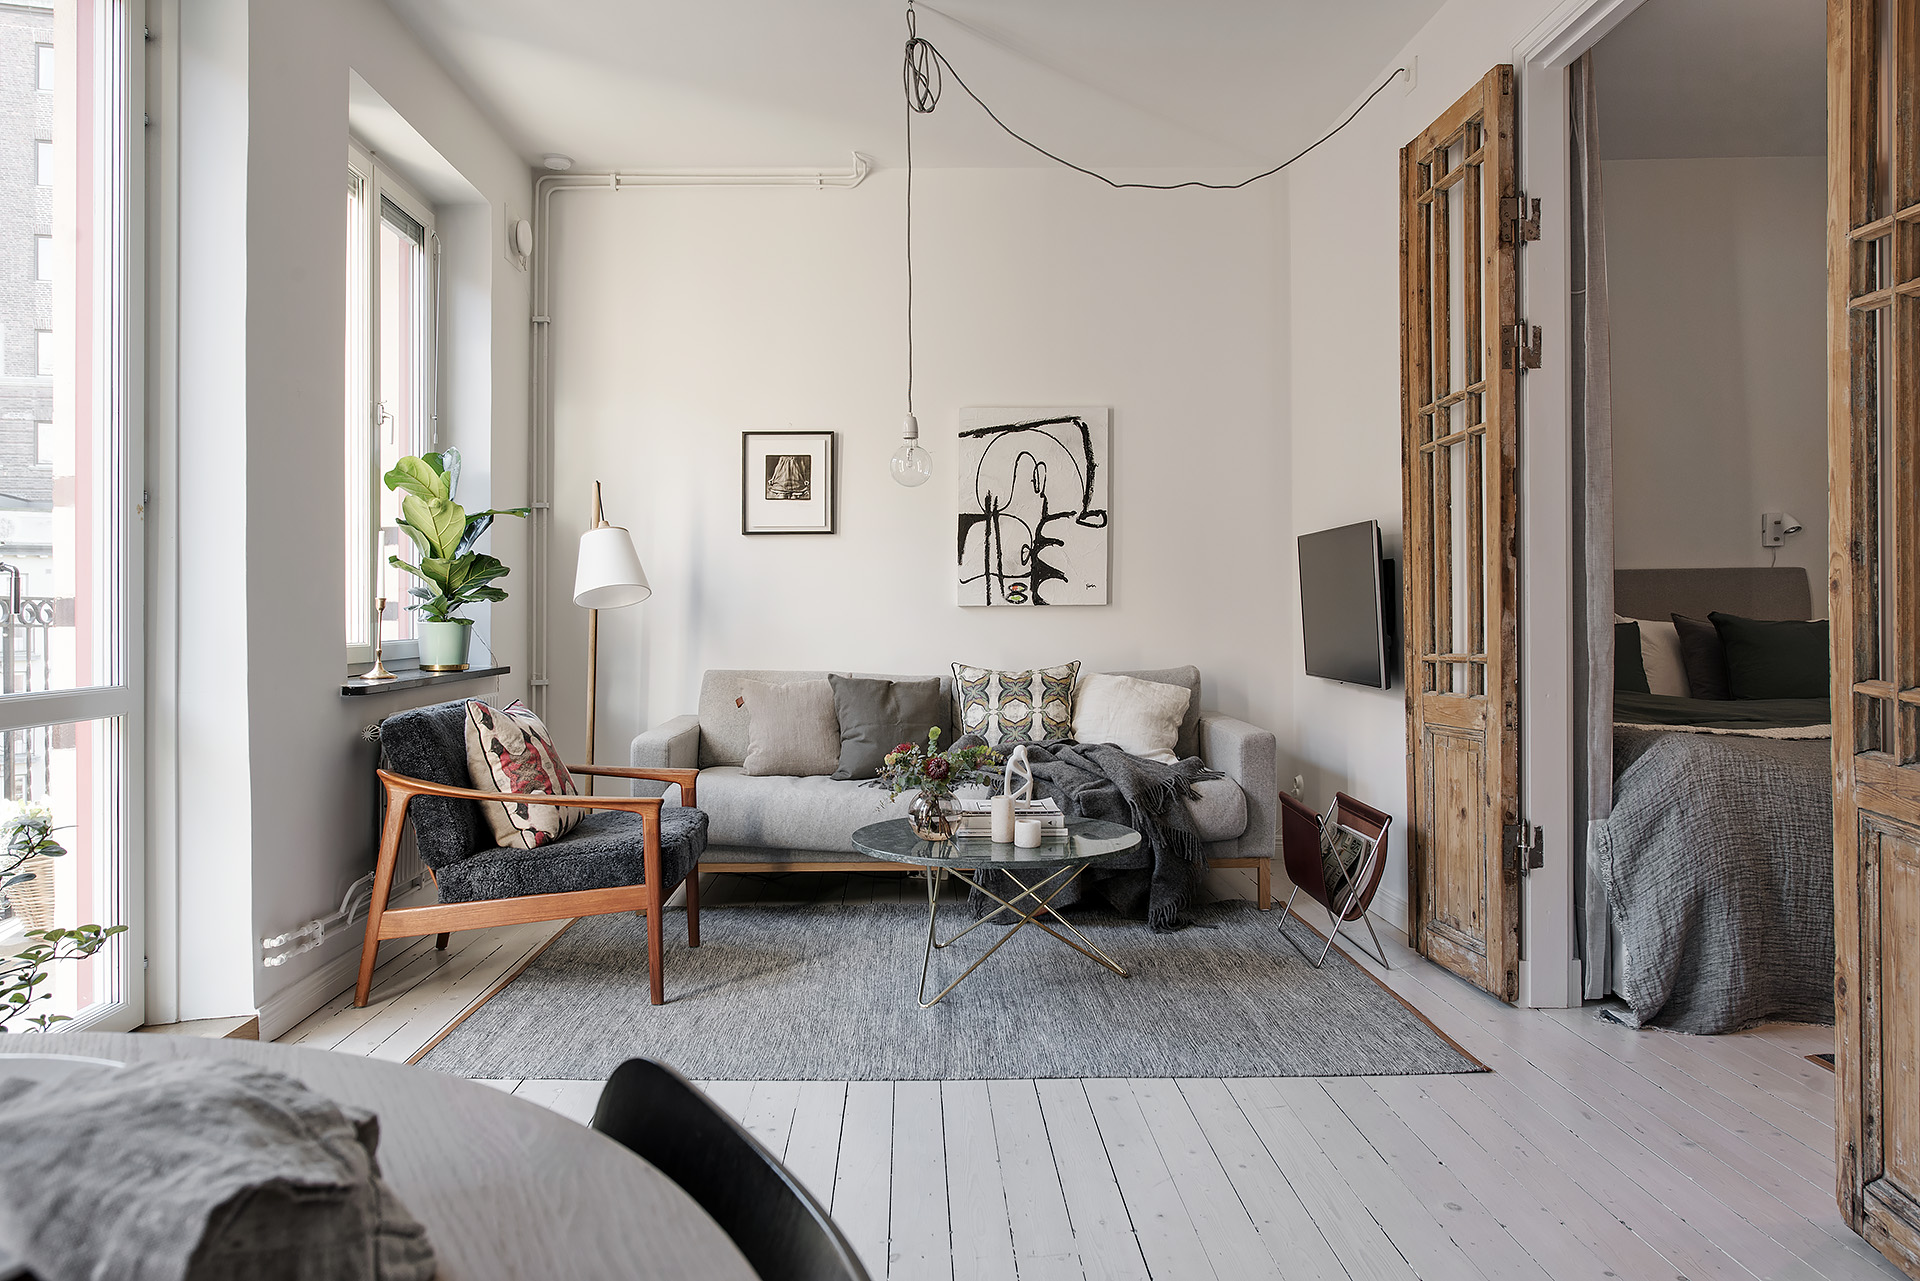 delikatissen piso sueco moderno ático estilo nórdico estilo escandinavo decoración pisos pequeños decoración áticos decoración antigüedades 